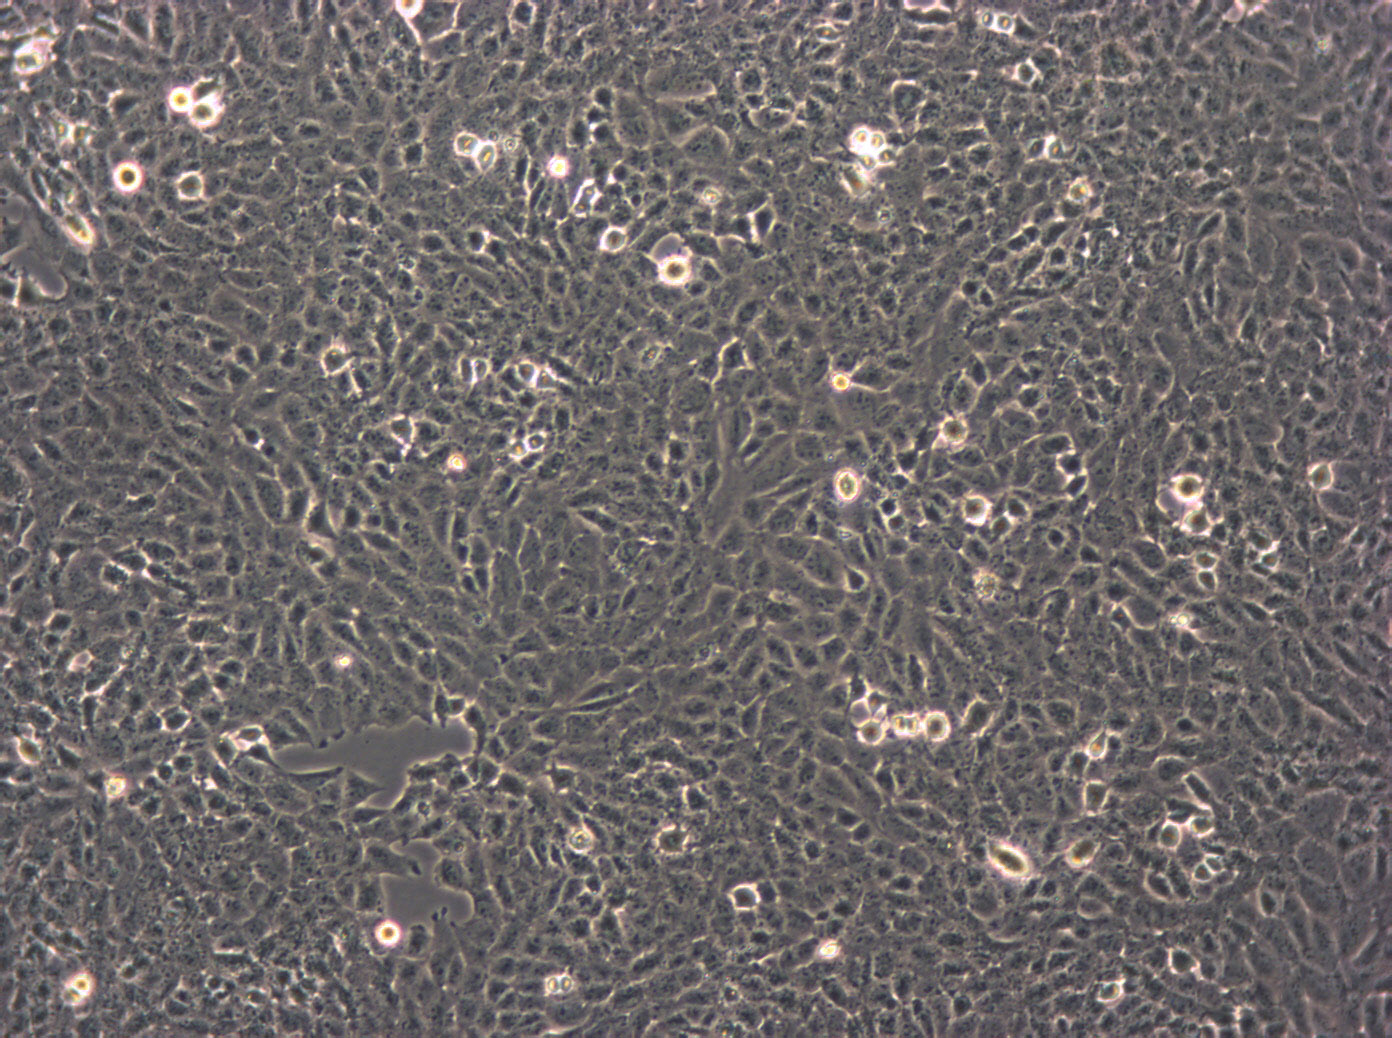 UMR-106 cell line大鼠骨肉瘤细胞系,UMR-106 cell line